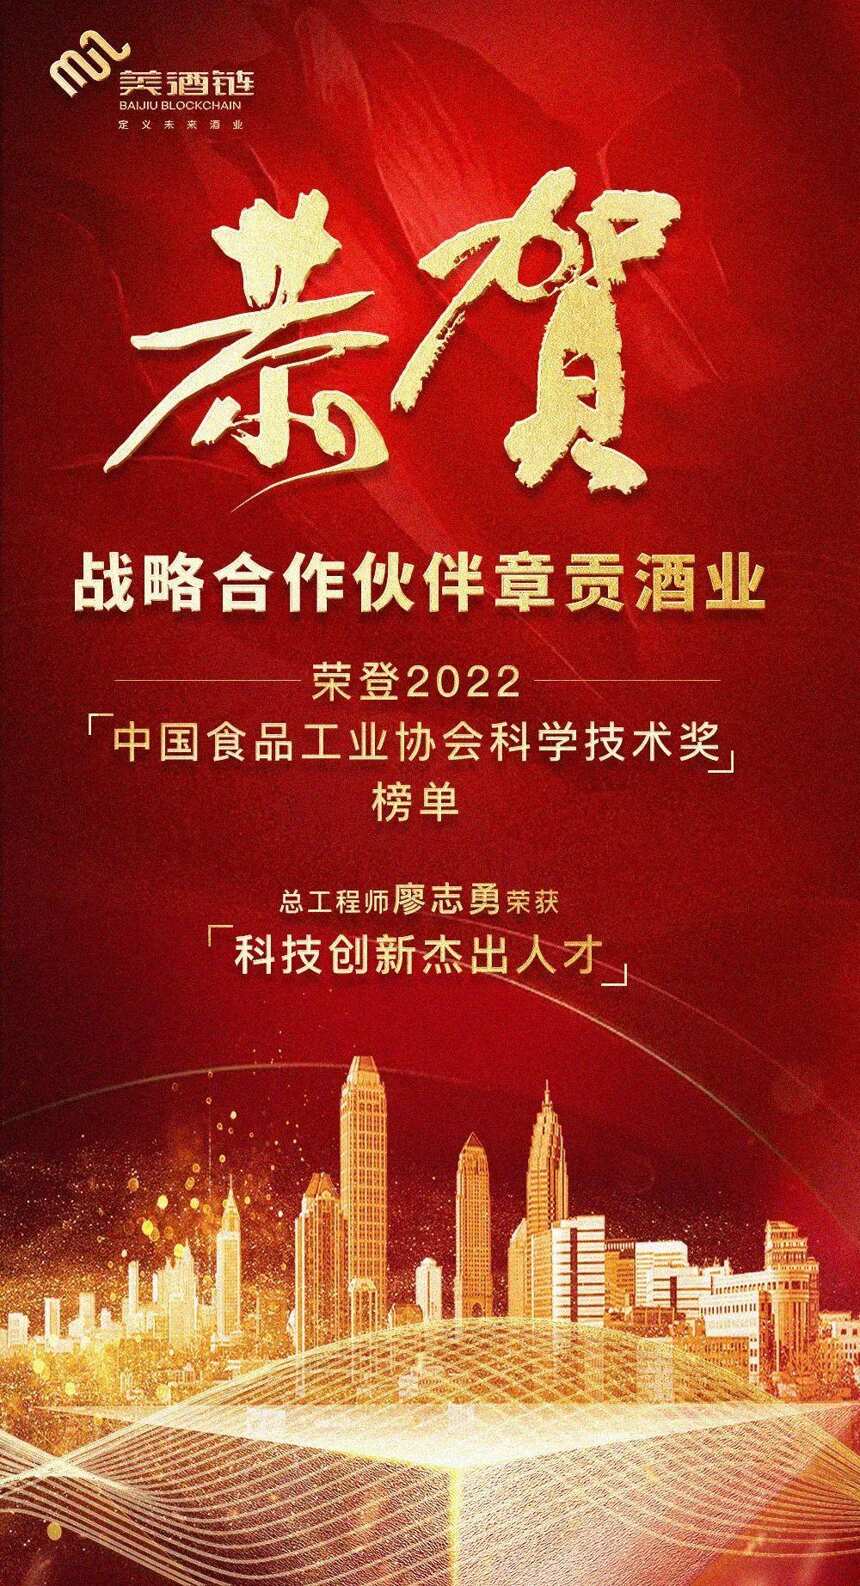 贺合作伙伴章贡酒业荣登2022“中国食品工业协会科学技术奖”榜单